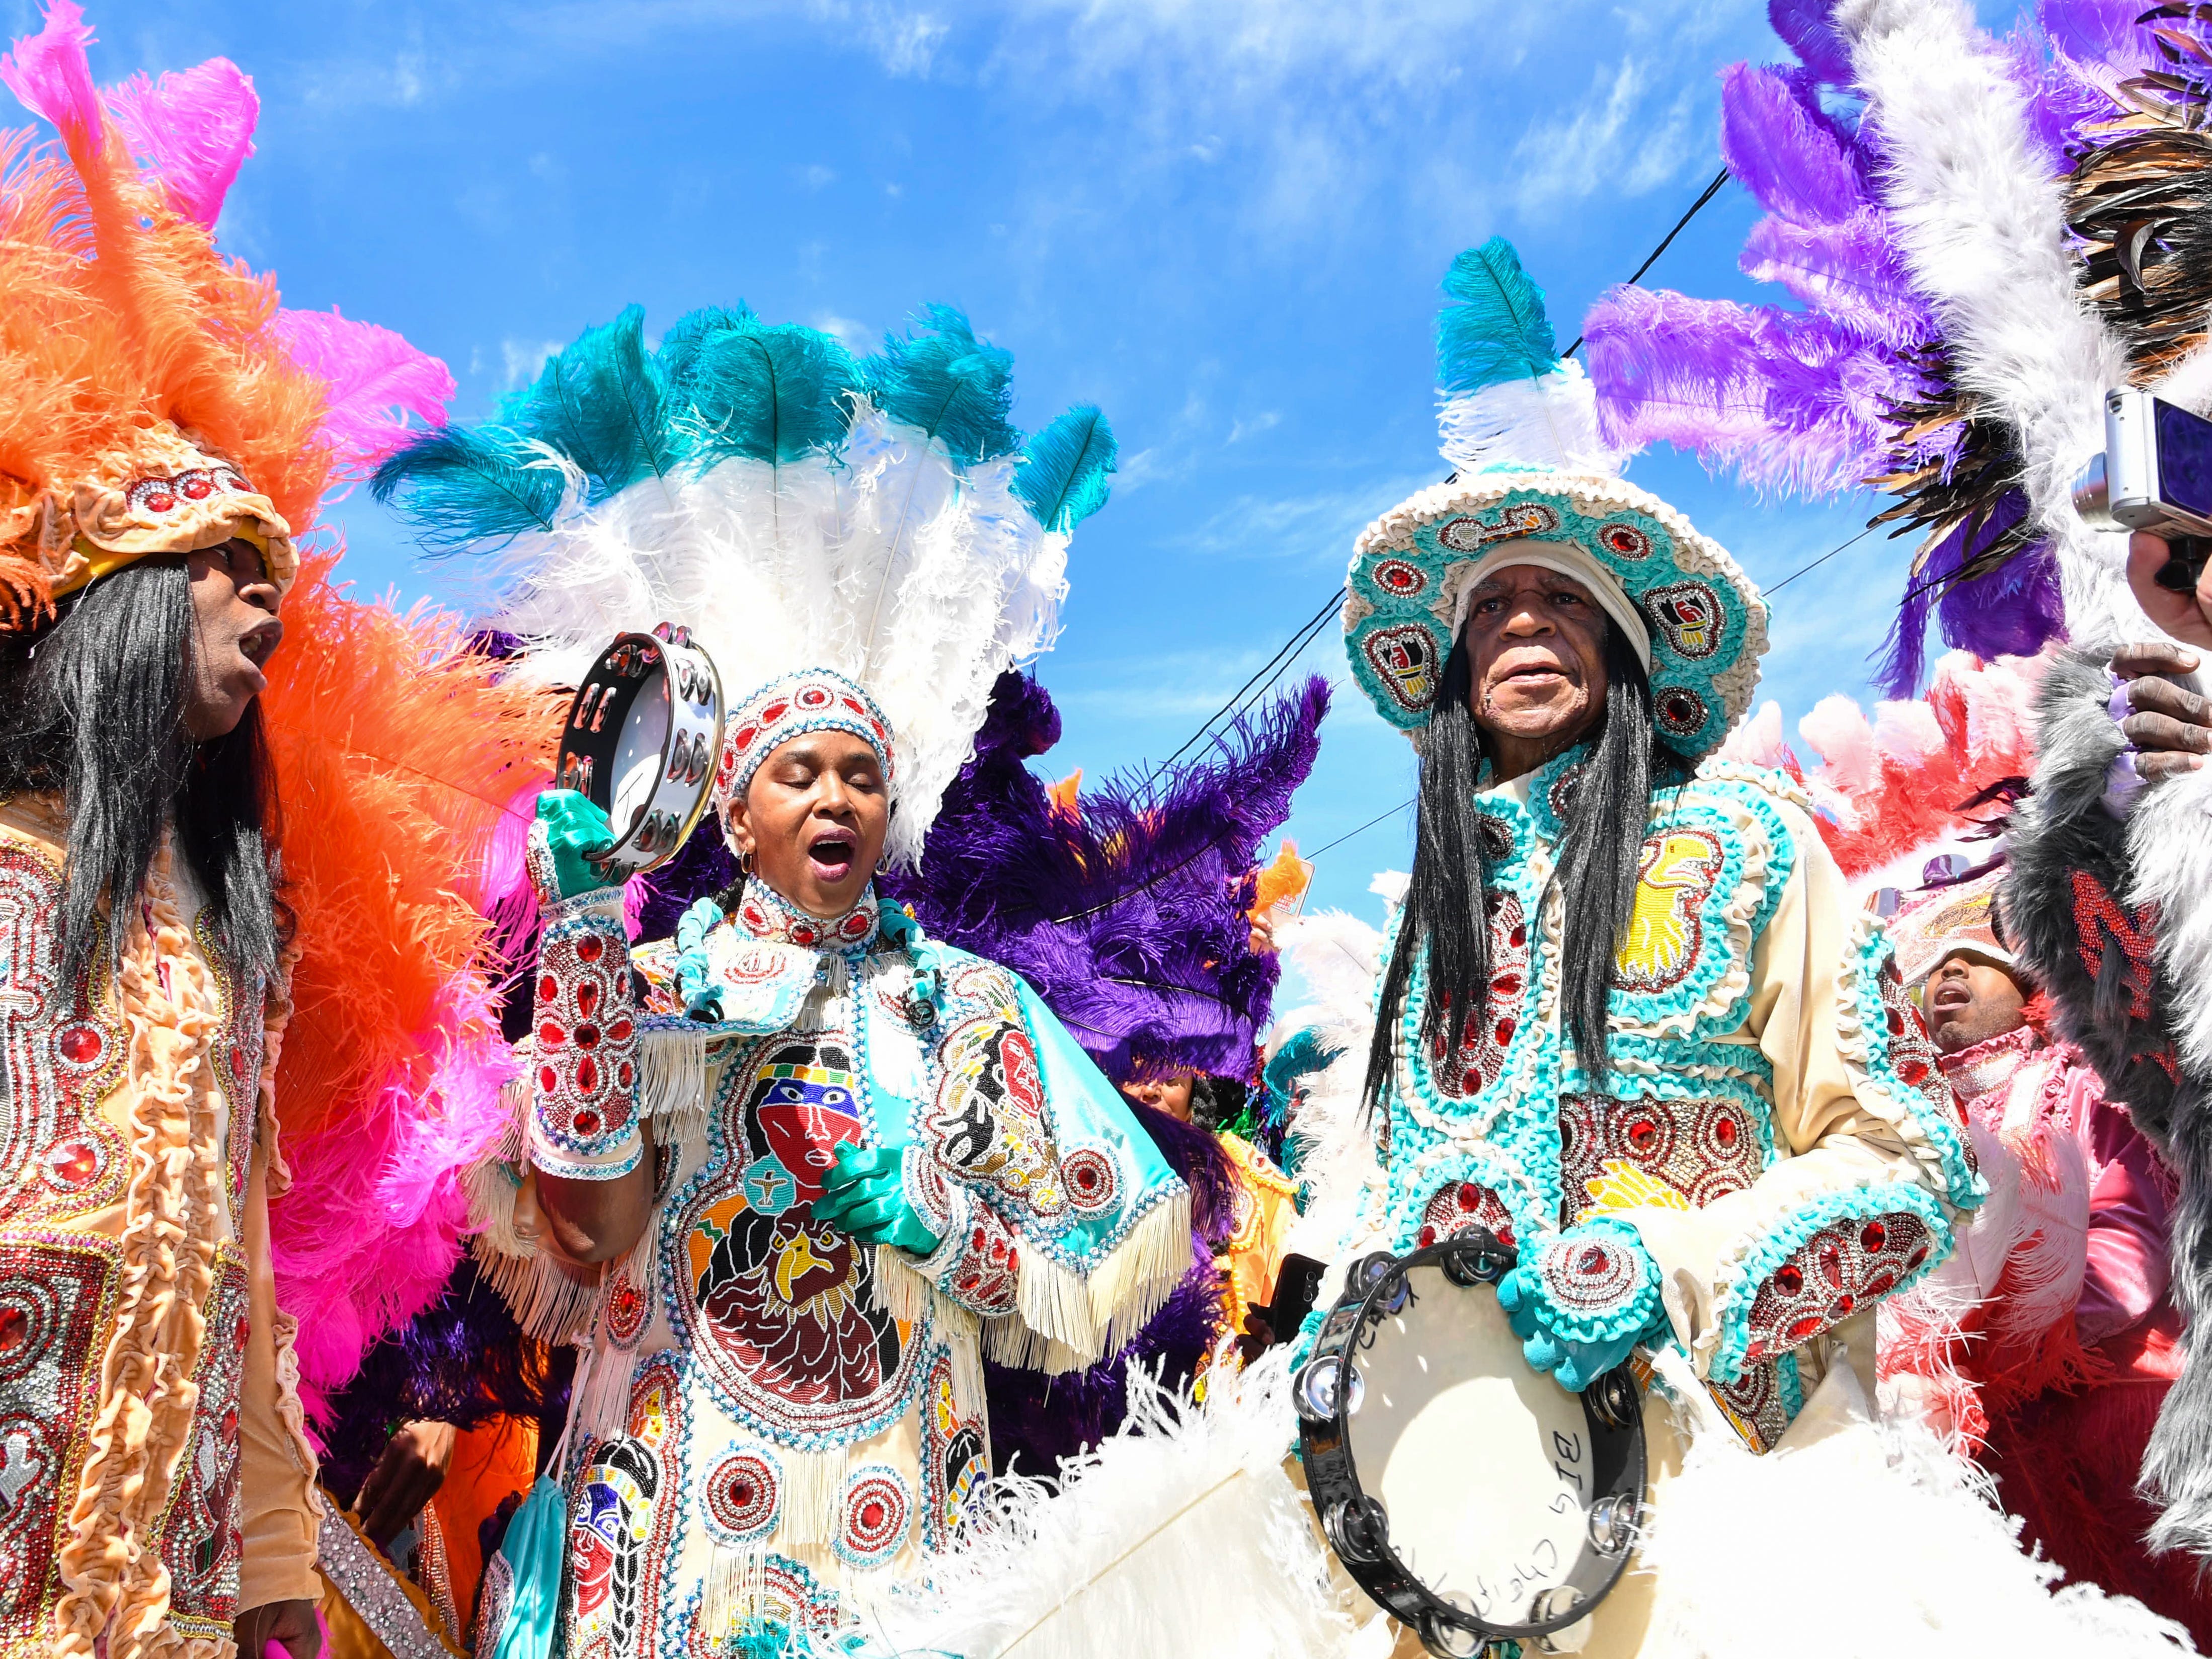 Mitglieder der Golden Eagles Mardi Gras Indians am 5. März 2019 in New Orleans, Louisiana